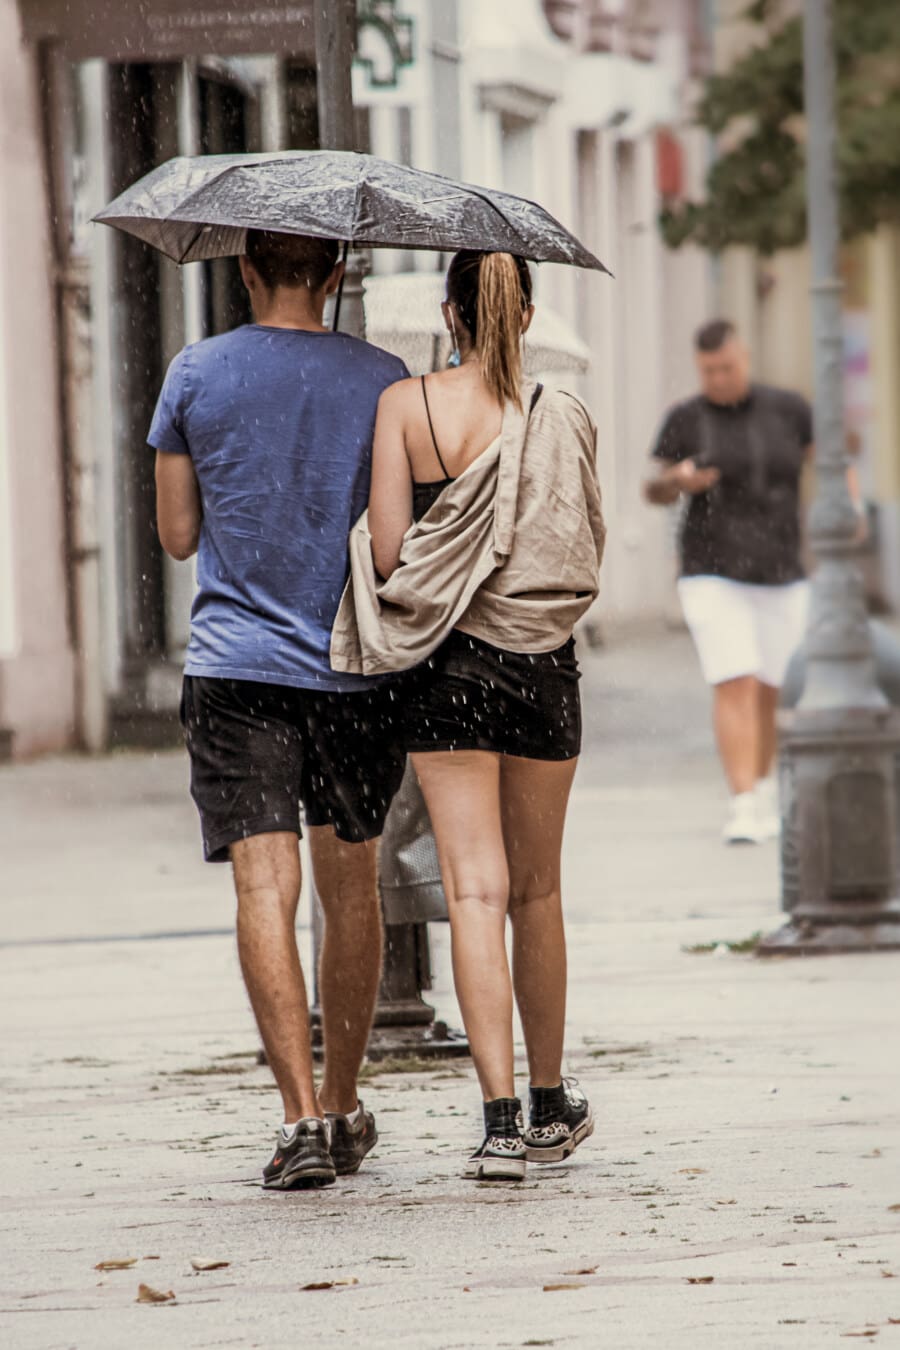 djevojka, kiša, dečko, hodanje, kišobran, romantično, ulica, žena, djevojka, suknja